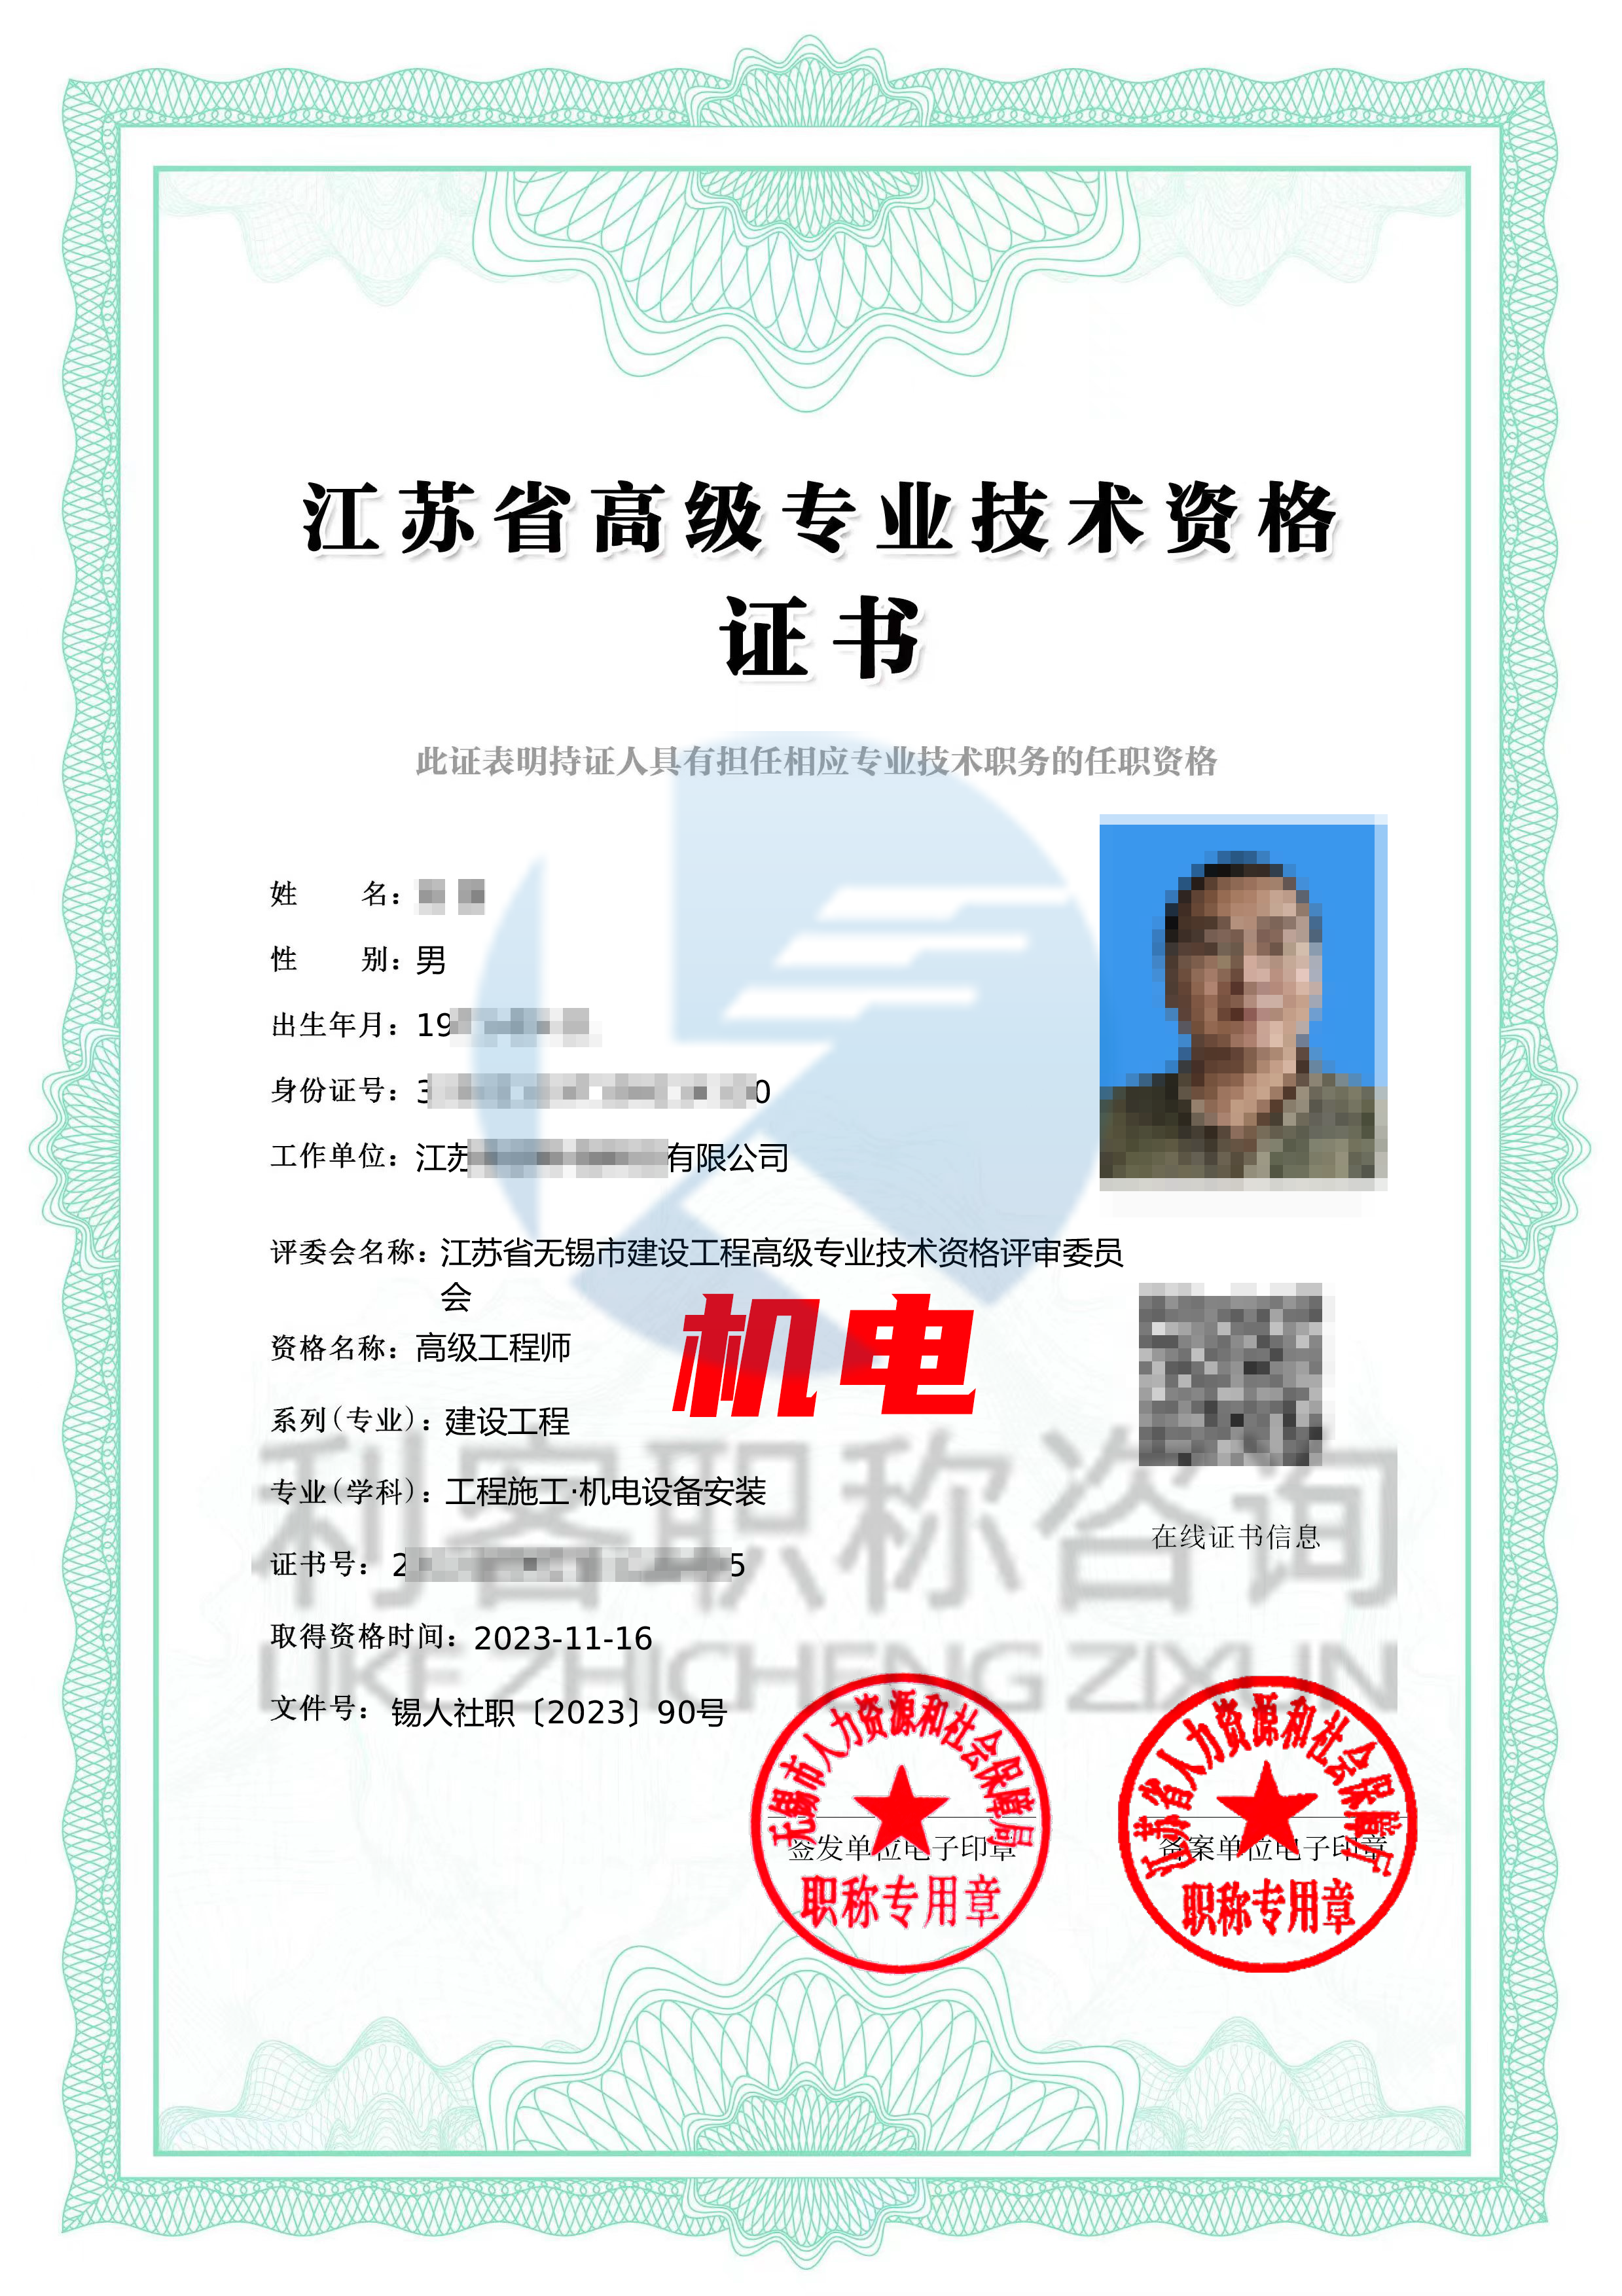 江苏副高级建设工程职称高级机电工程师证书.png